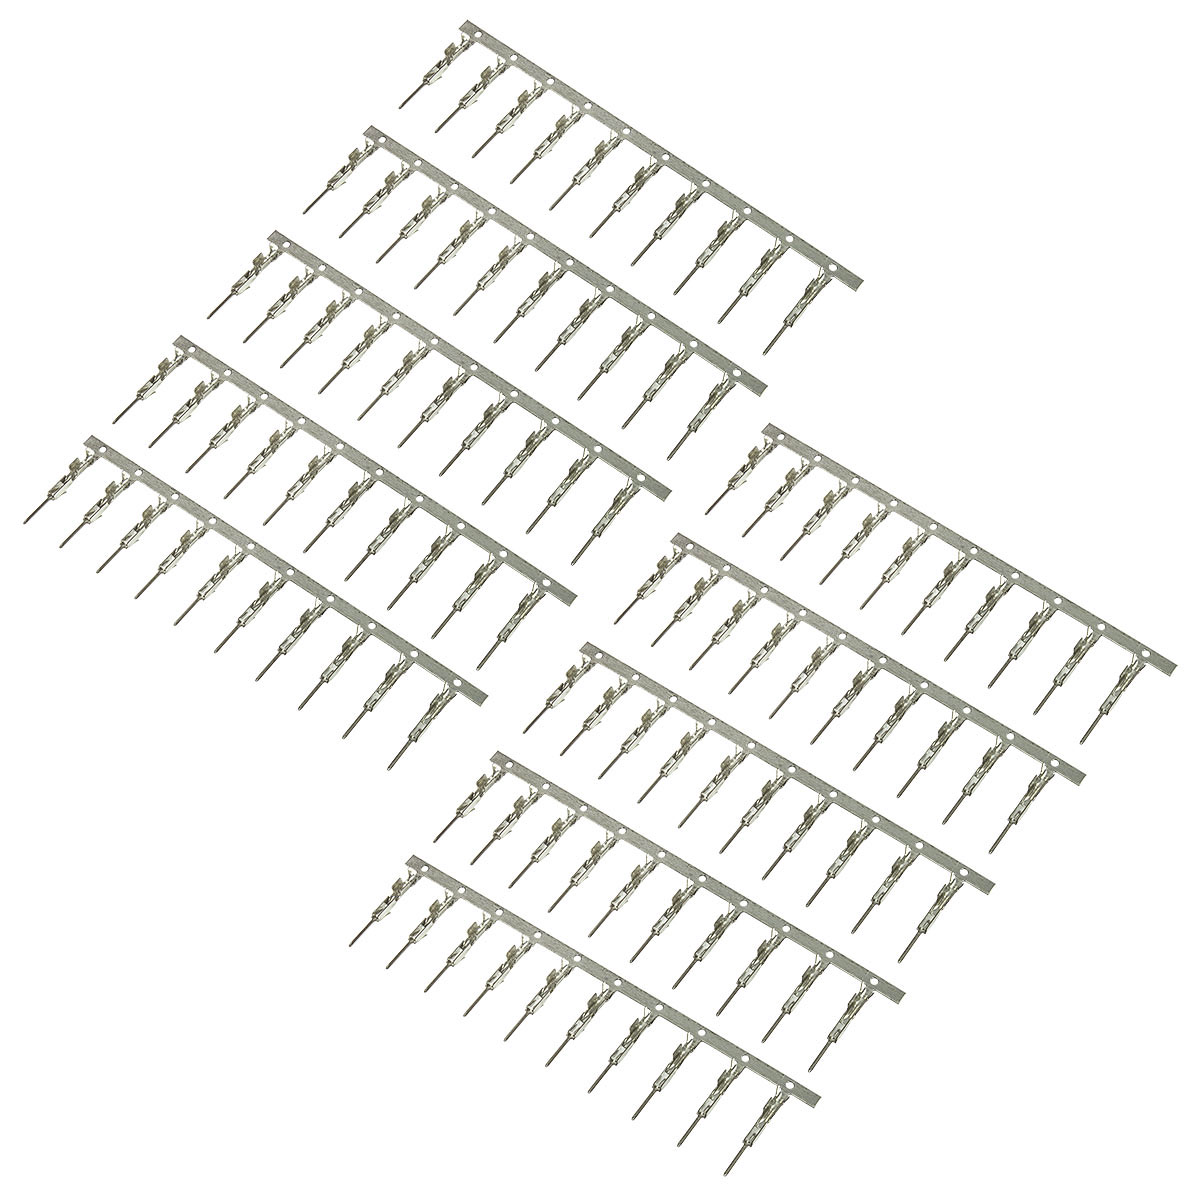 MQS Kontakte ( male ) Stecker 100 Stück für Quadlock Buchse Einsatz-/bilder/big/to72025.jpg